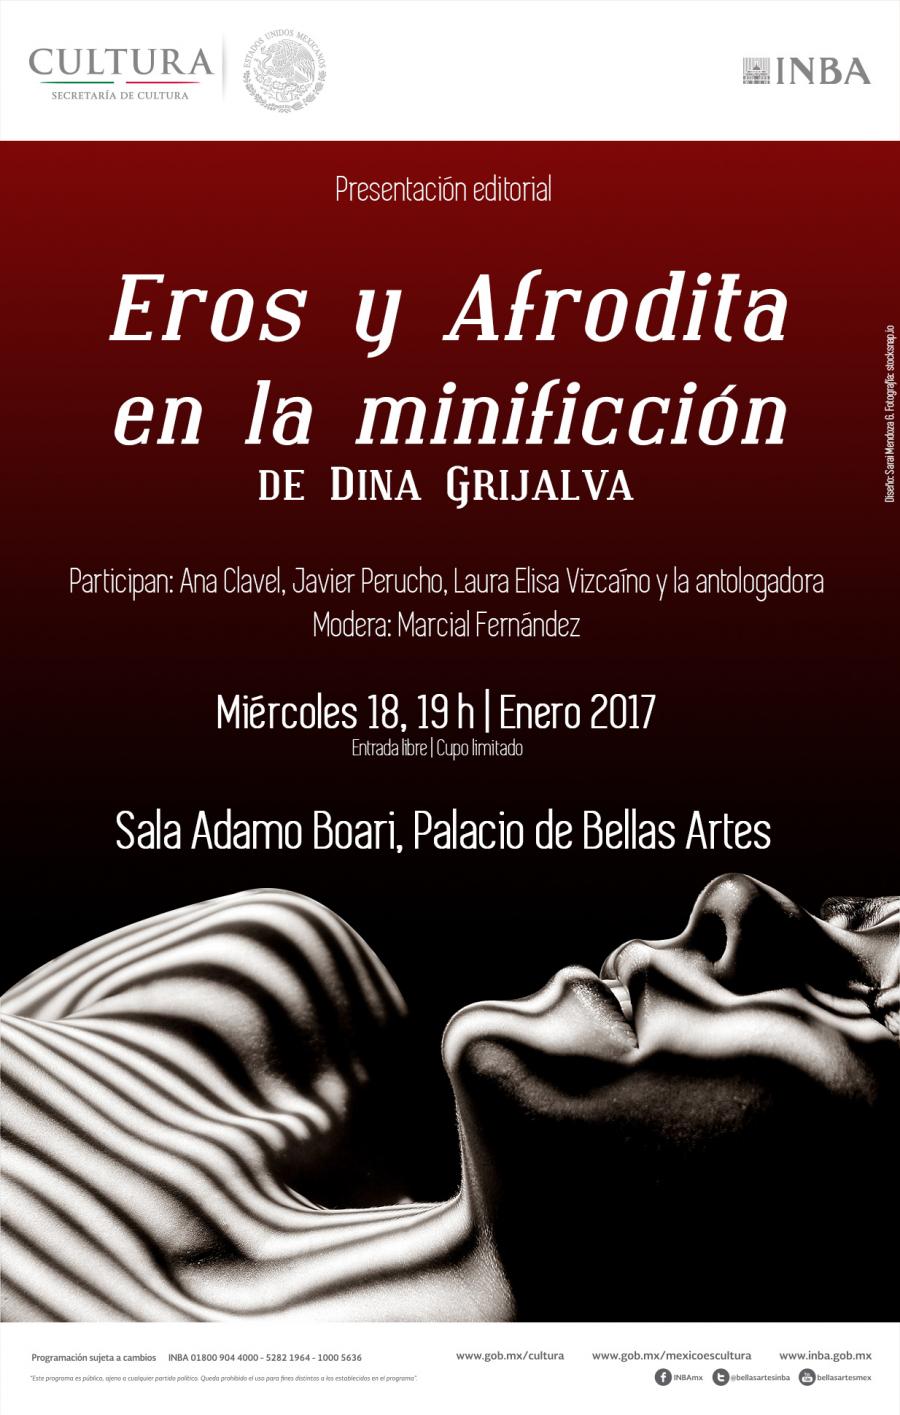 Eros y Afrodita en la minificción, antología compilada por Dina Grijalva